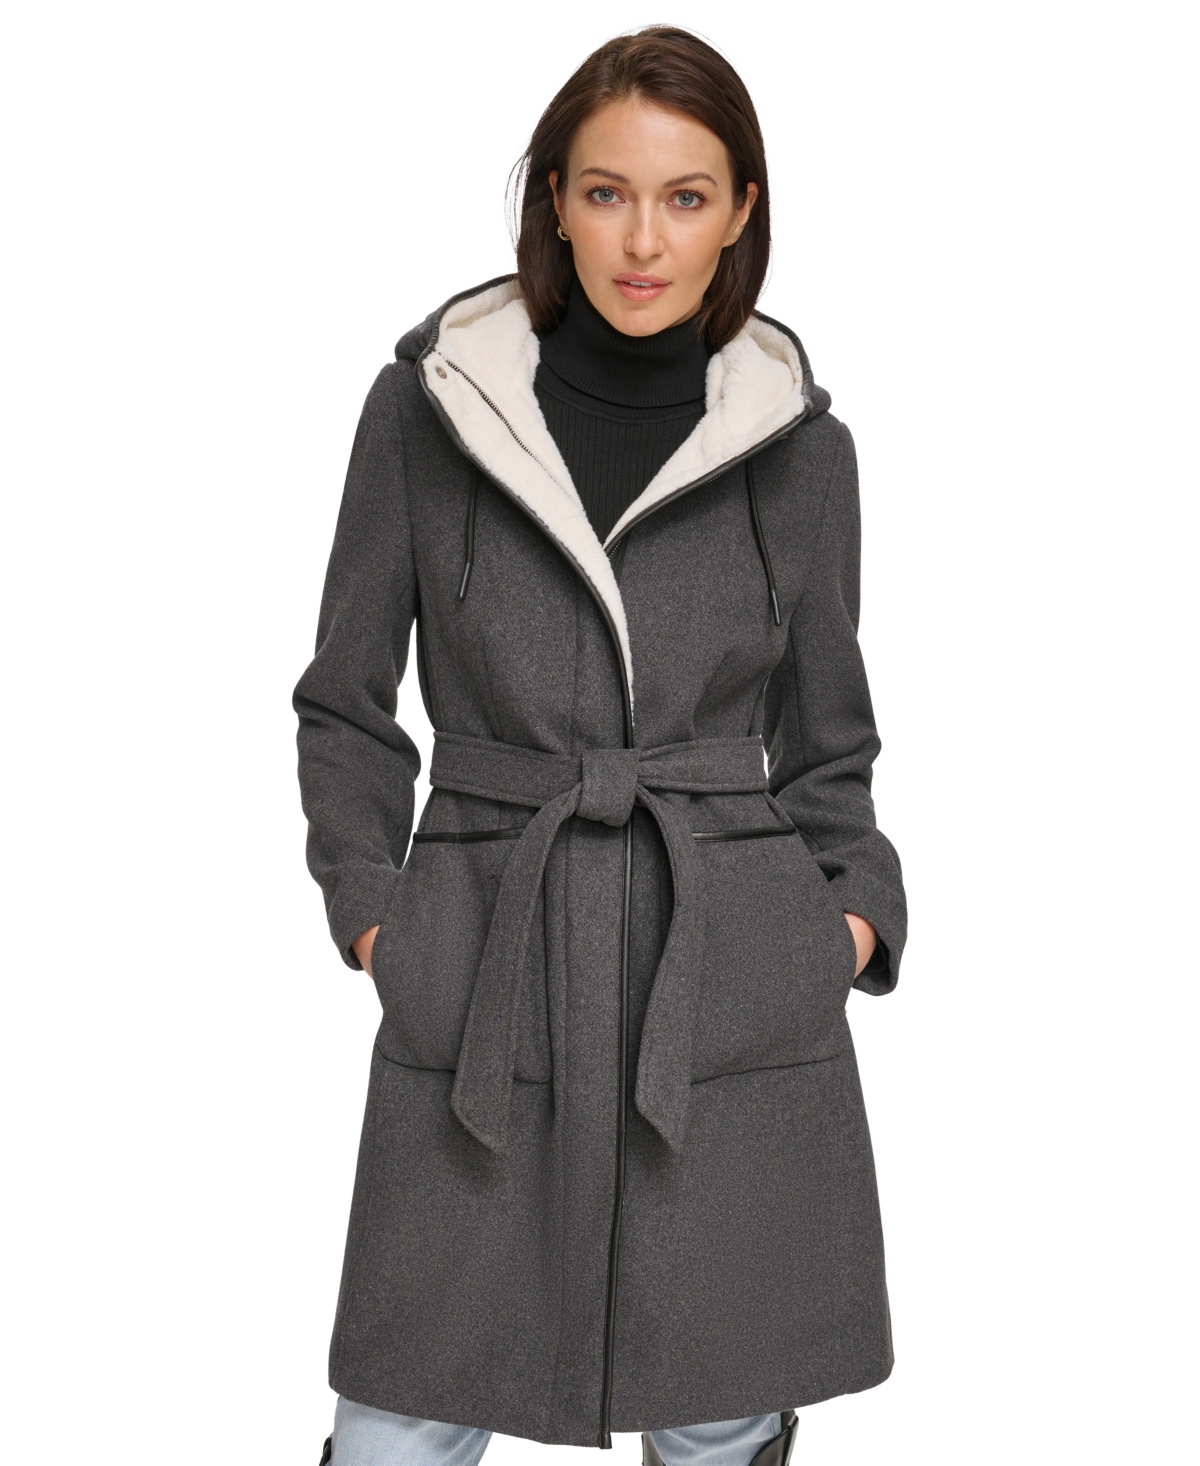 Dkny Women's Faux-fur Hooded Wool Blend Belted Coat In Medium Grey